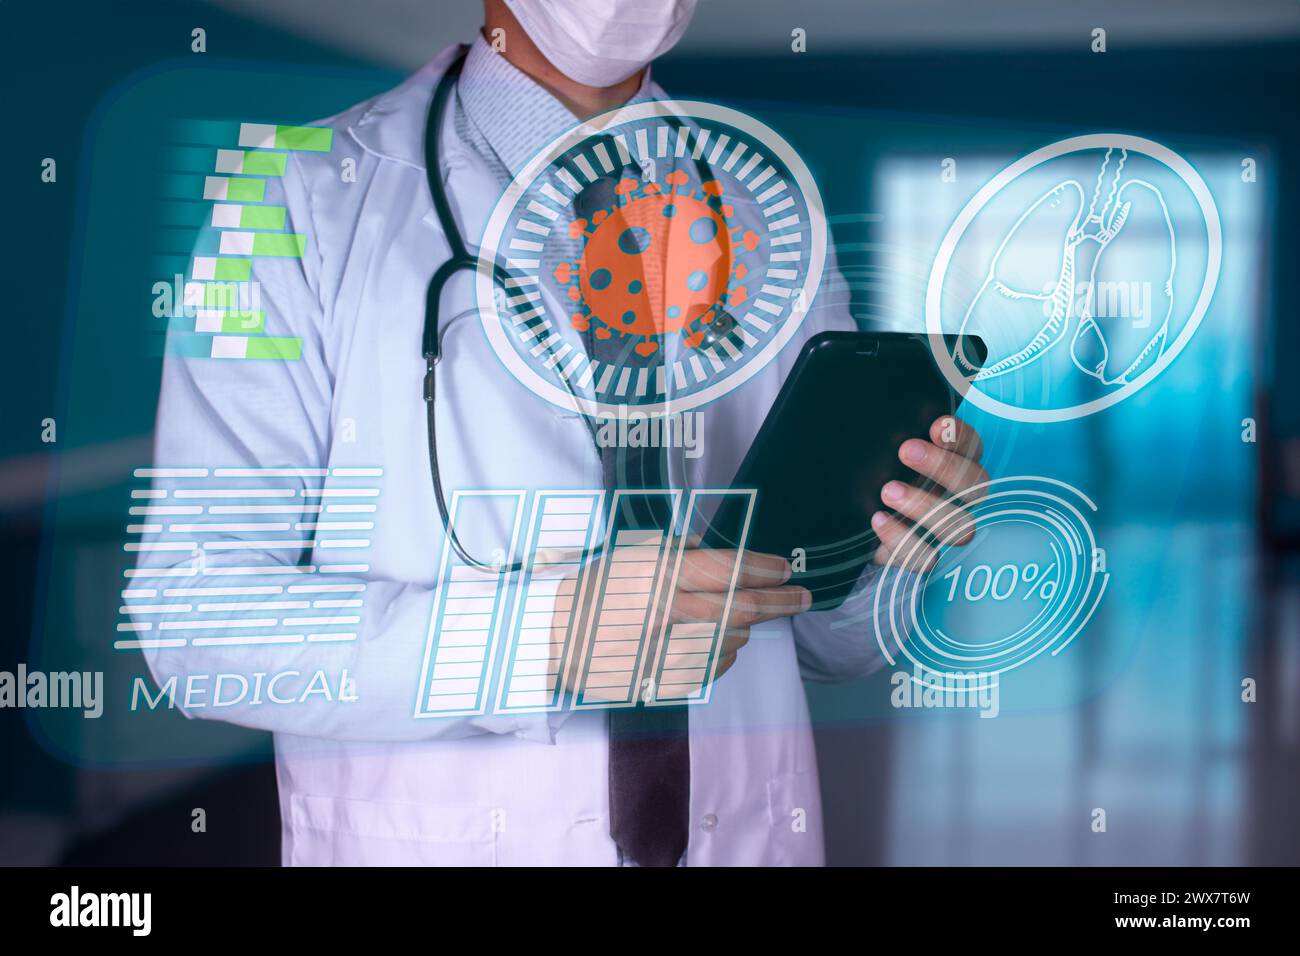 Konzept: Gesundheit und Medizin, Arzt mit Mundstück hält eine Tablette und diagnostiziert virtuelle menschliche Lungen mit möglichen Infektionen wie Grippe oder Influenz Stockfoto